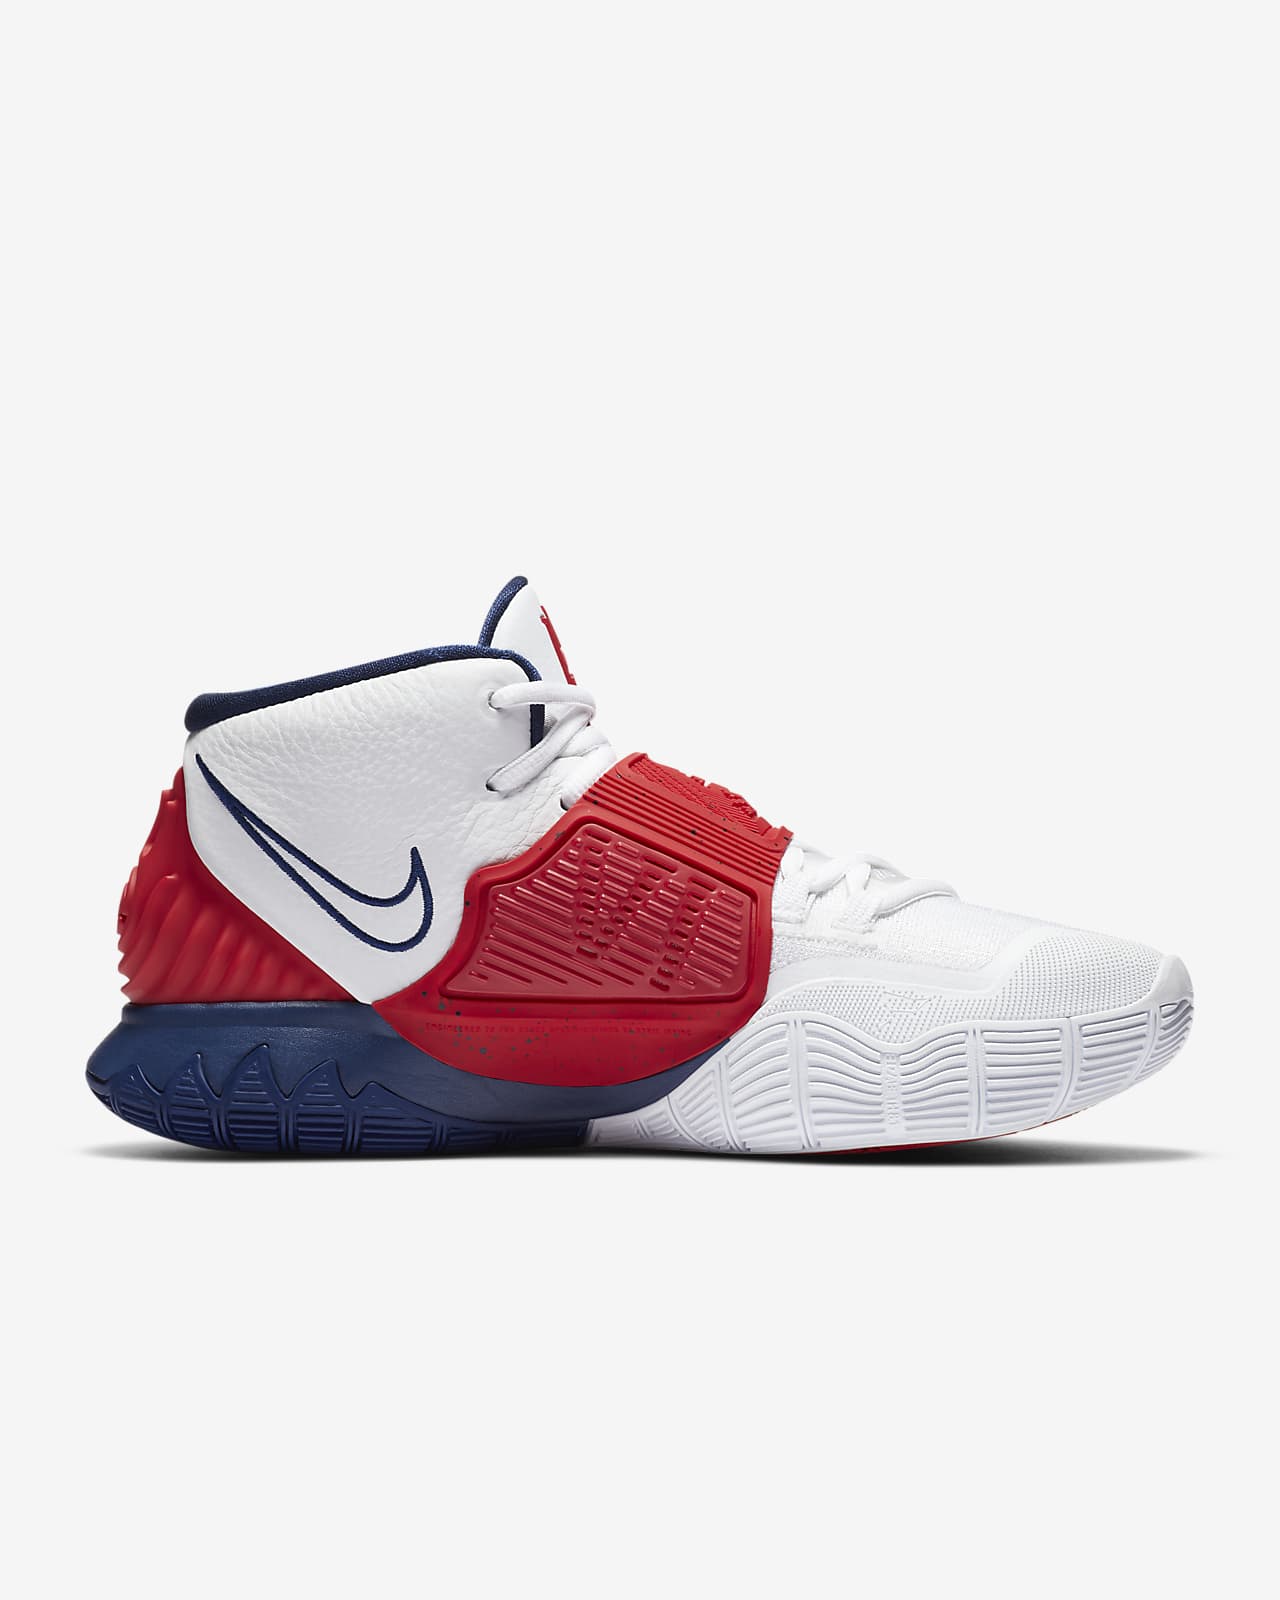 Kyrie 6 Basketball Shoe. Nike IL